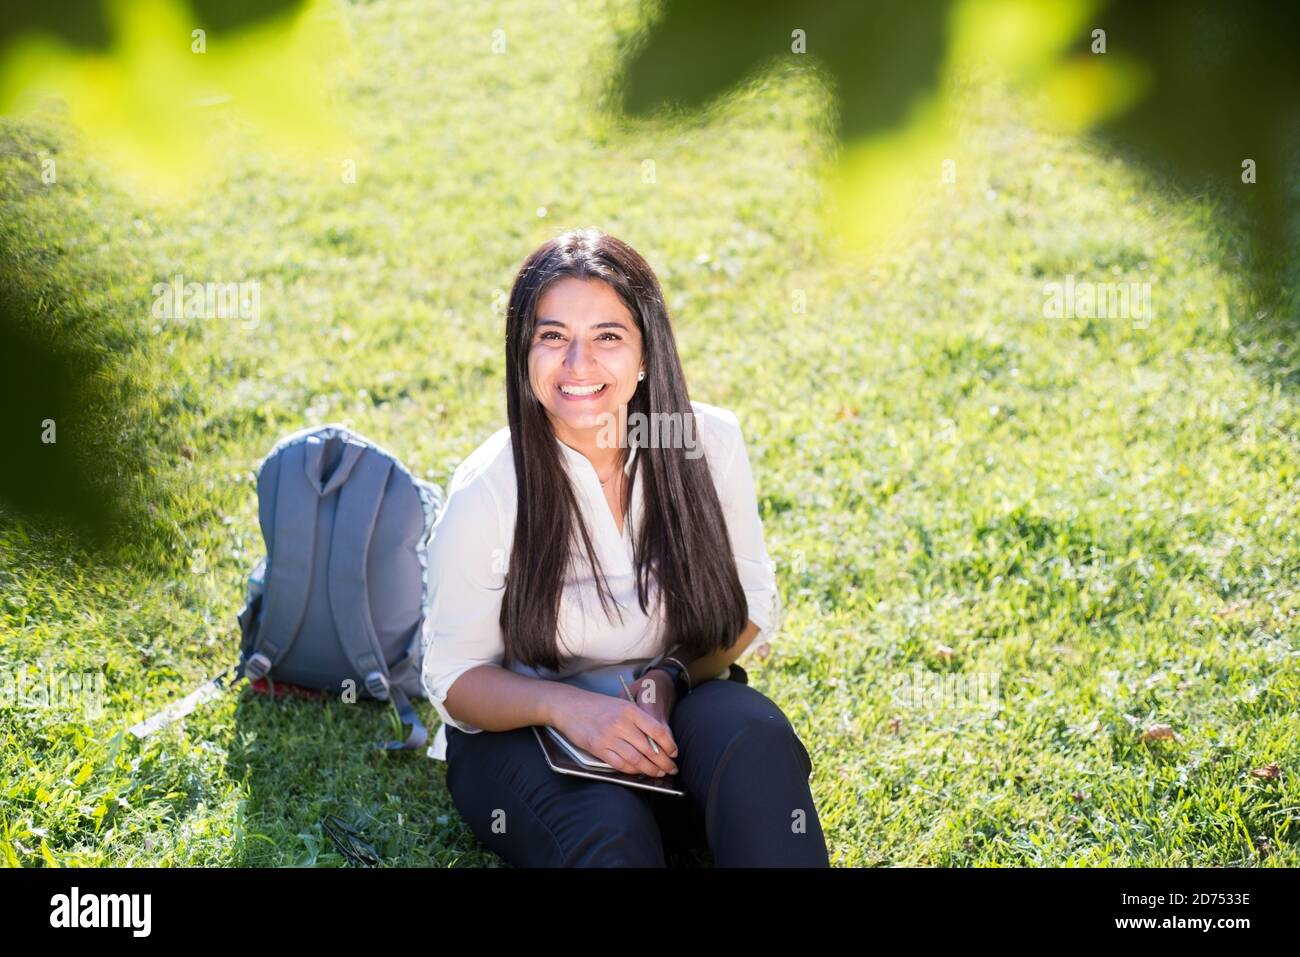 La niña India, estudiante, sonríe, se sienta en la hierba verde, con una mochila y un bloc de notas, escribe Foto de stock